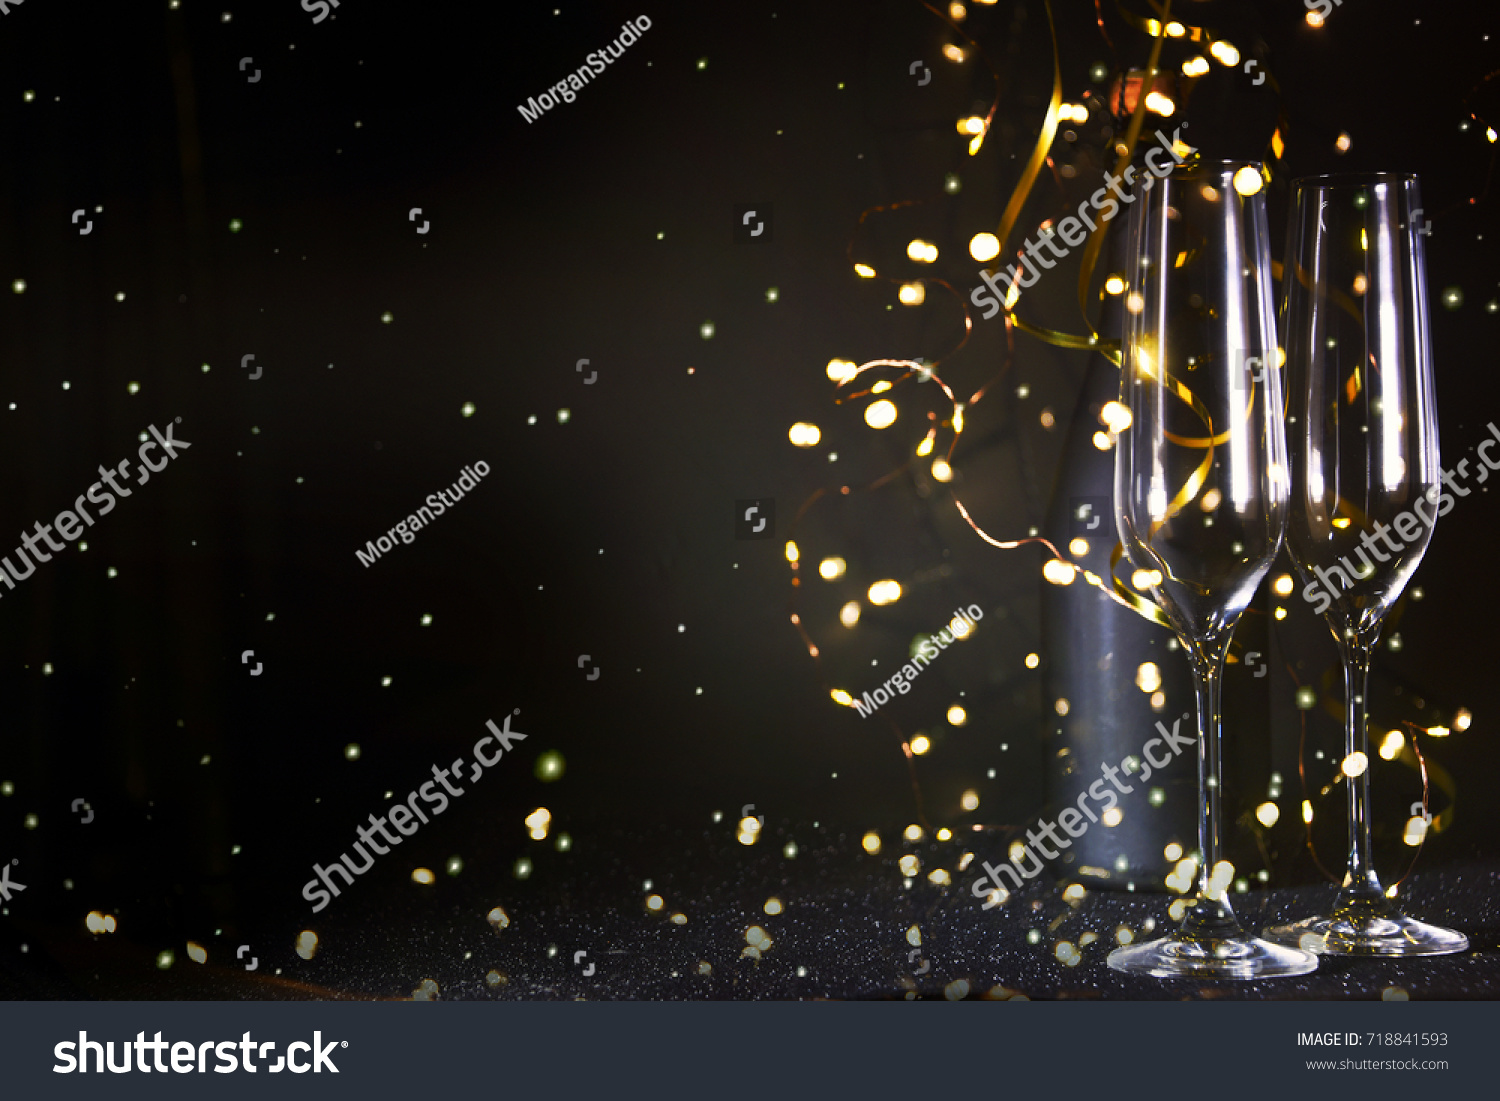 New Years Eve celebration background #718841593